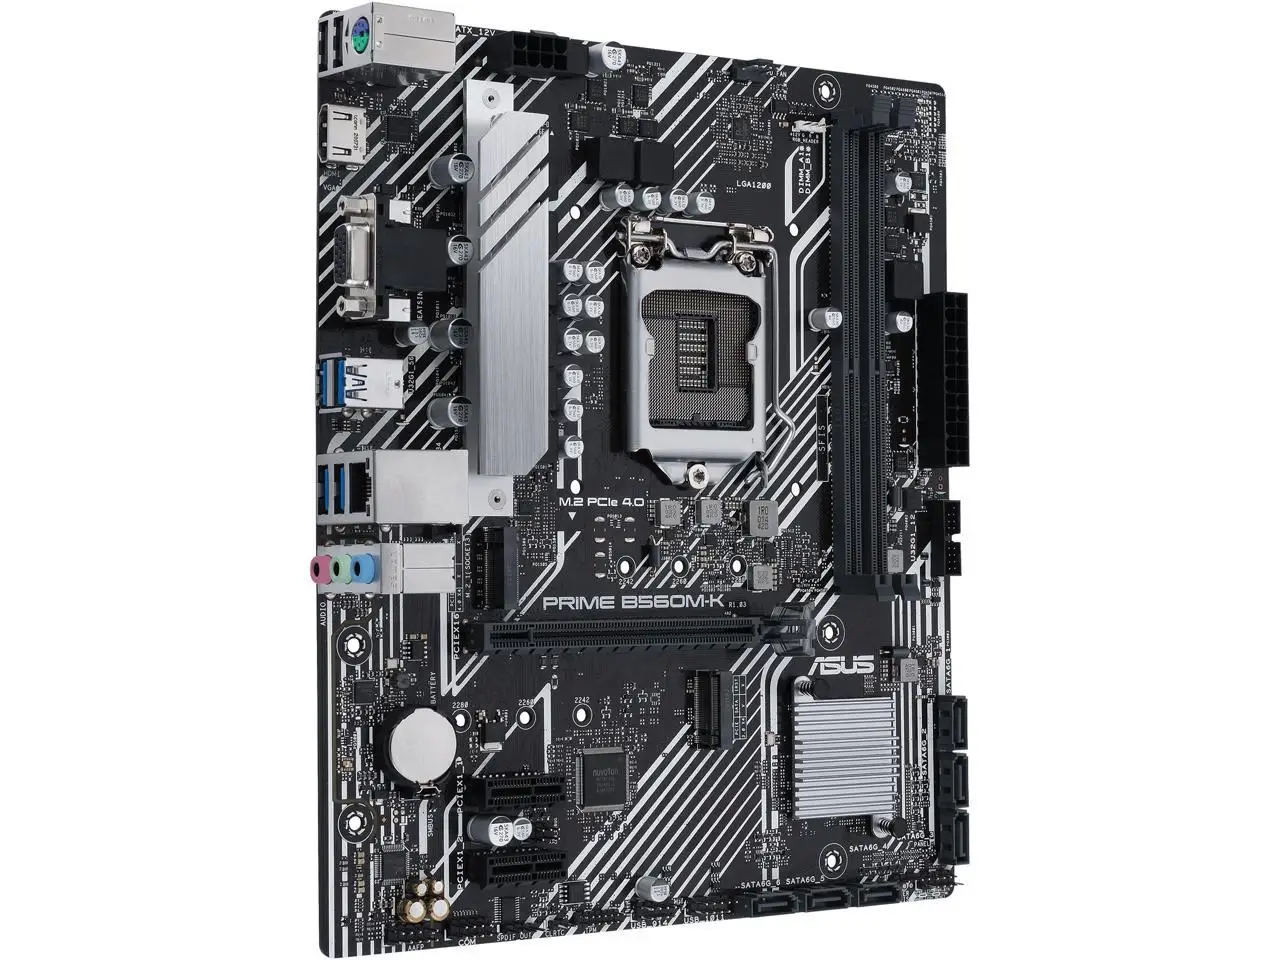 

Motherboard ASUS PRIME B560M-K LGA 1200 Intel B560 SATA 6Gb/s Micro ATX Intel Motherboard